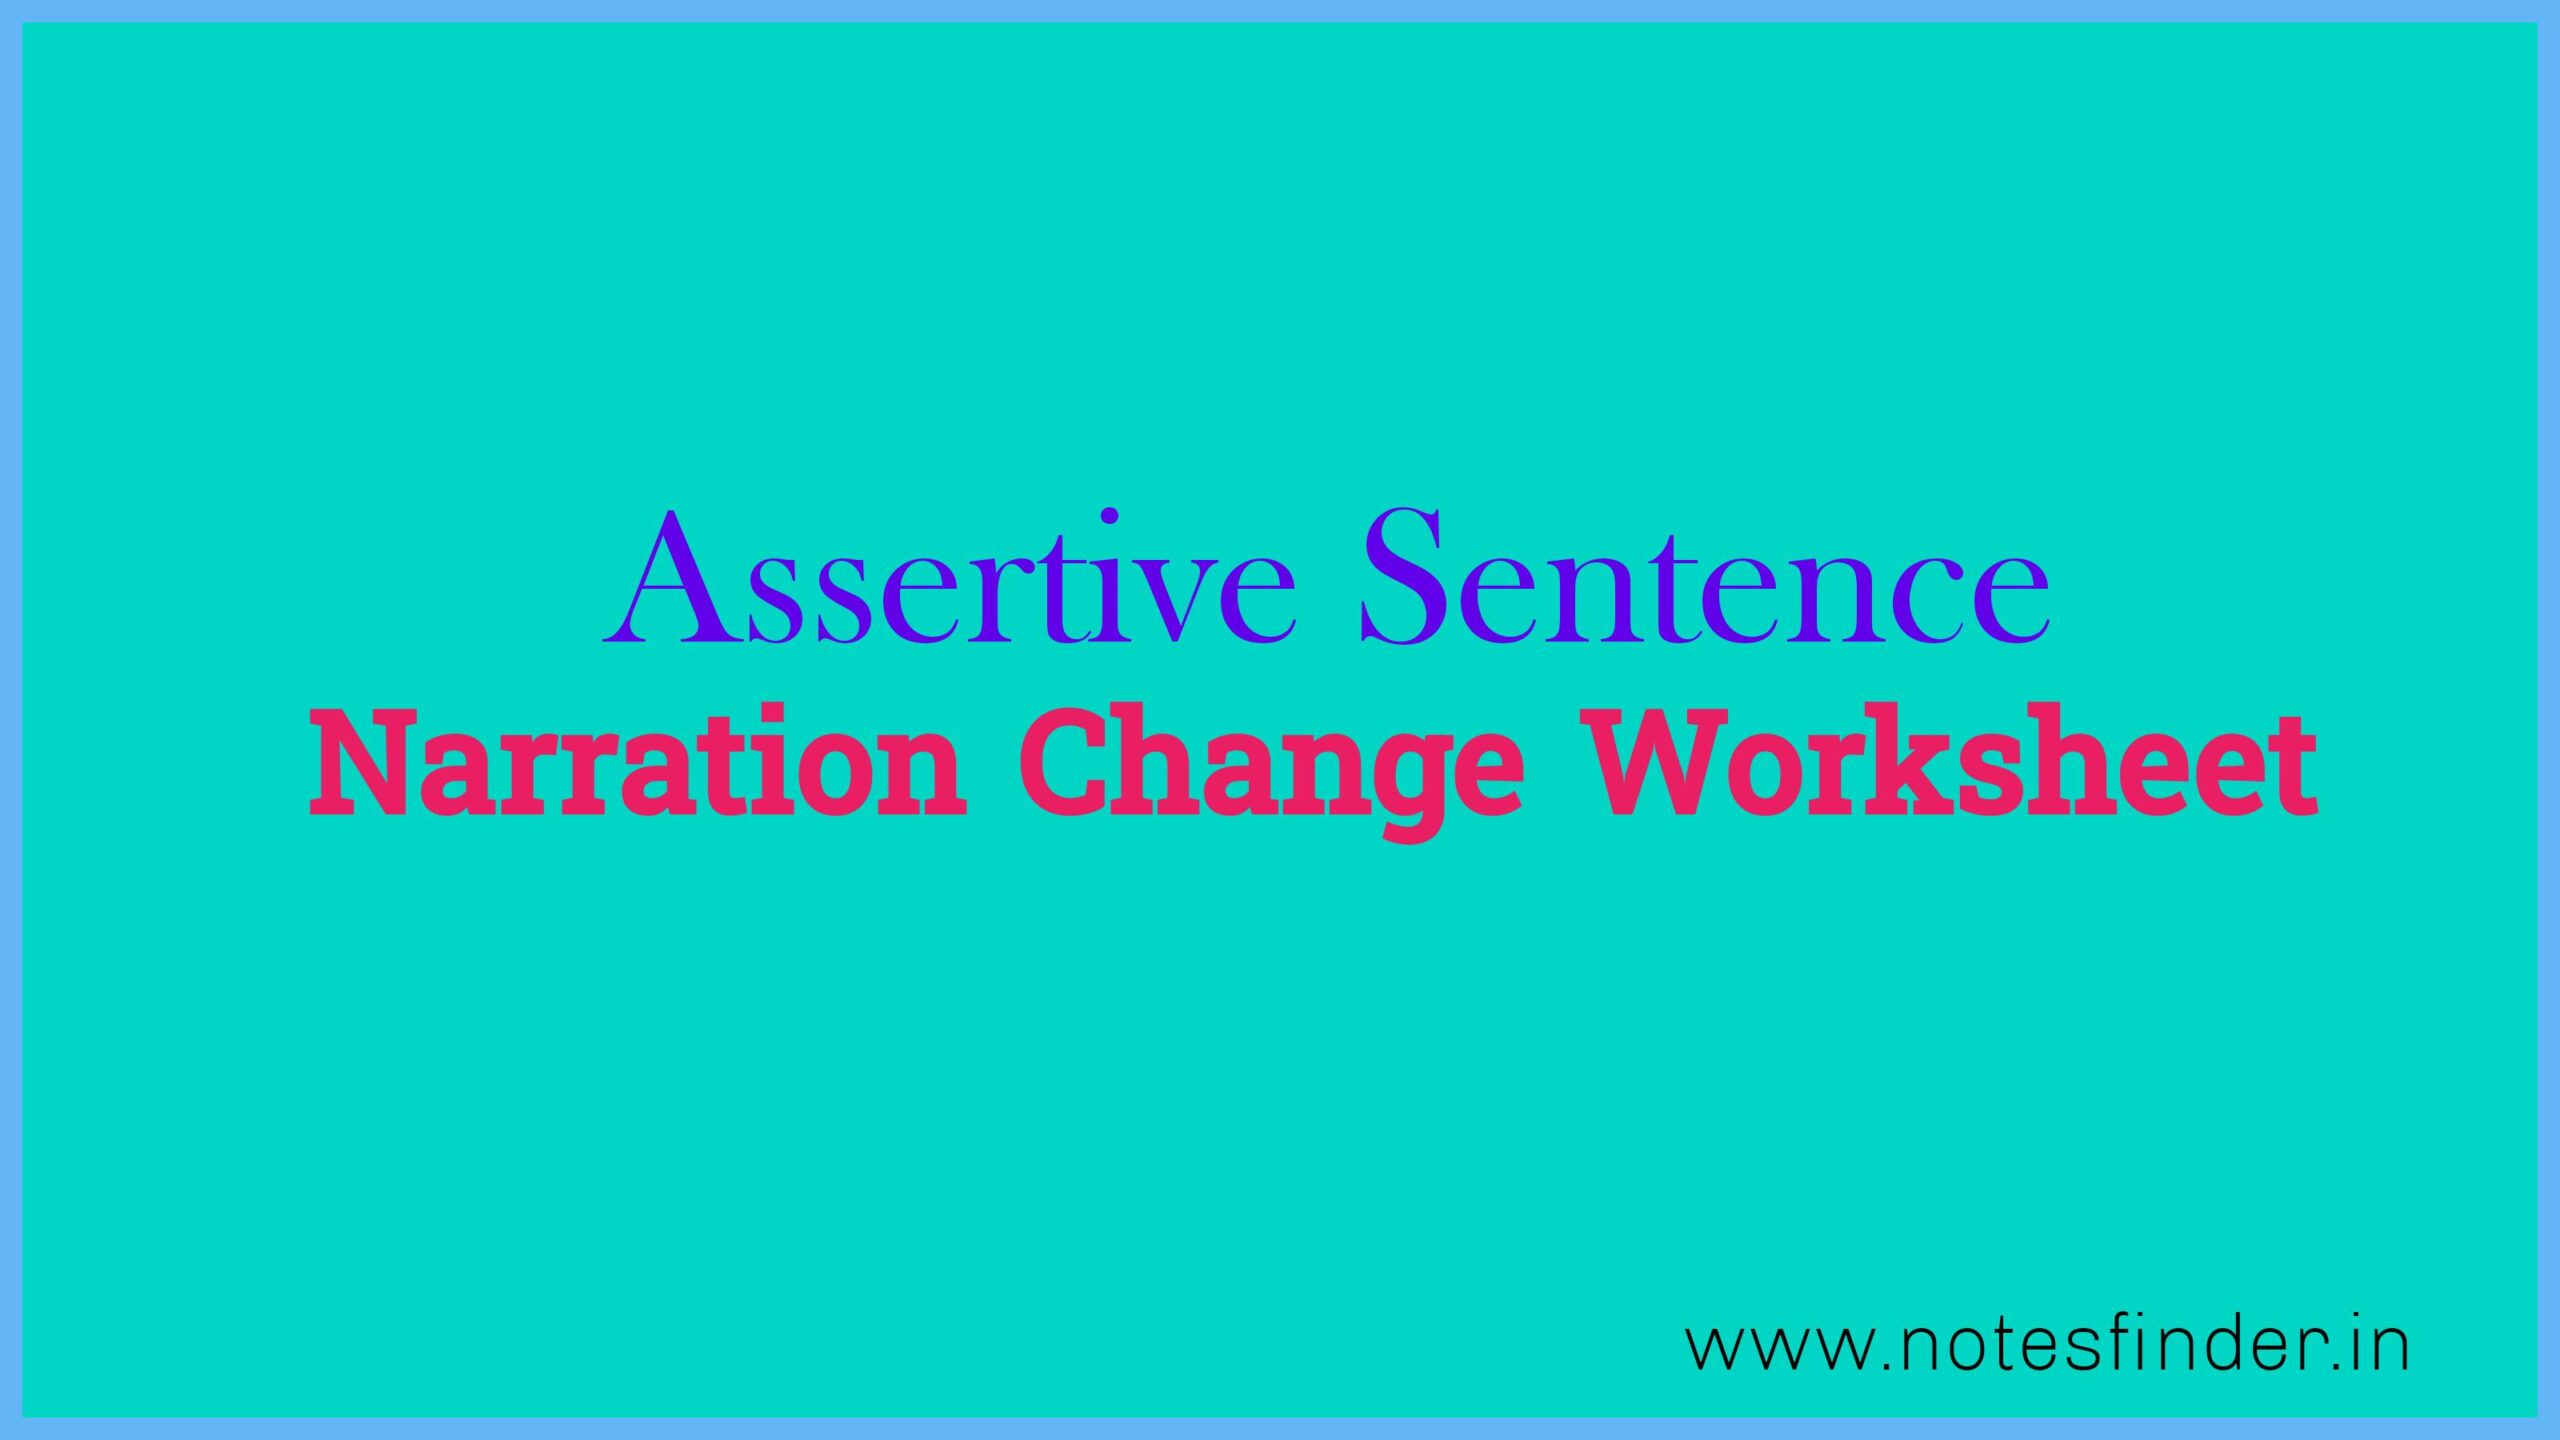 Assertive Sentence Narration Change Worksheet (Direct Speech to Indirect Speech)